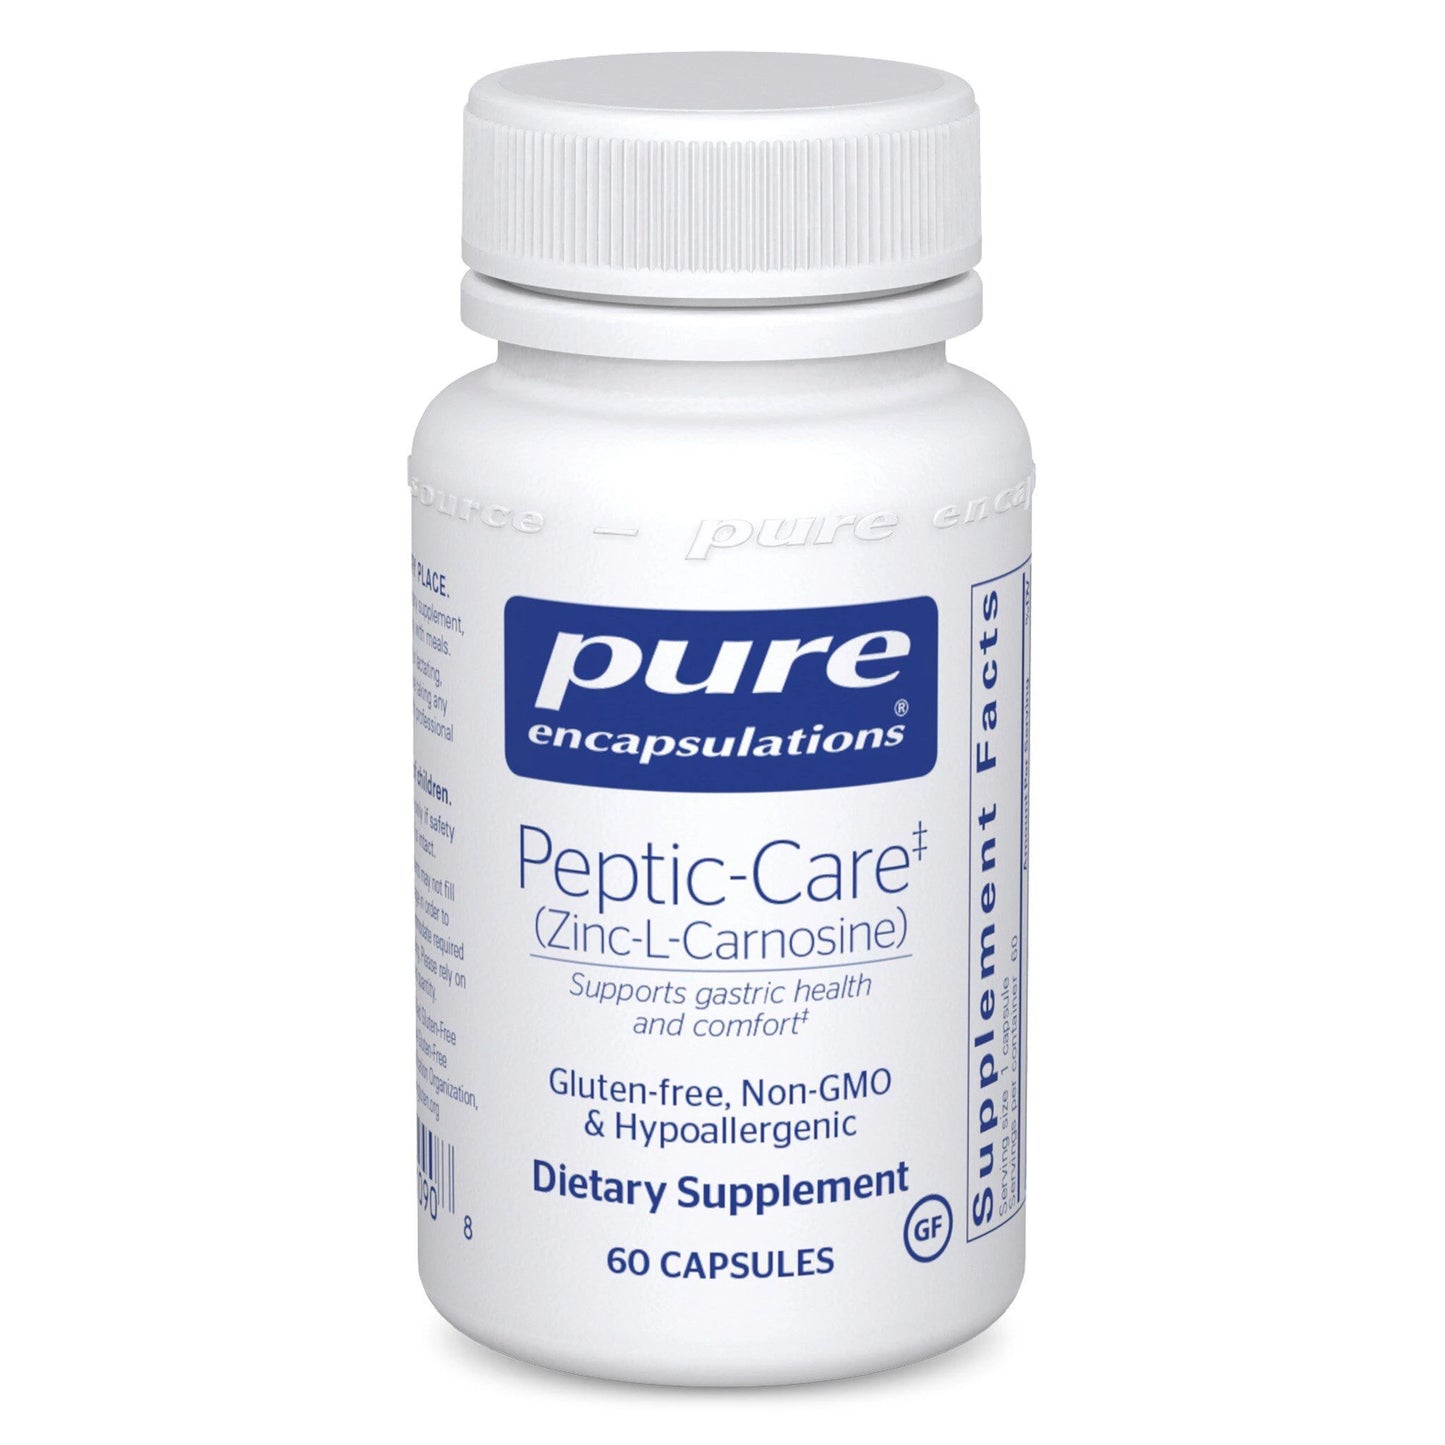 Peptic-Care (Zinc-L-Carnosine)- Pure Encapsulations